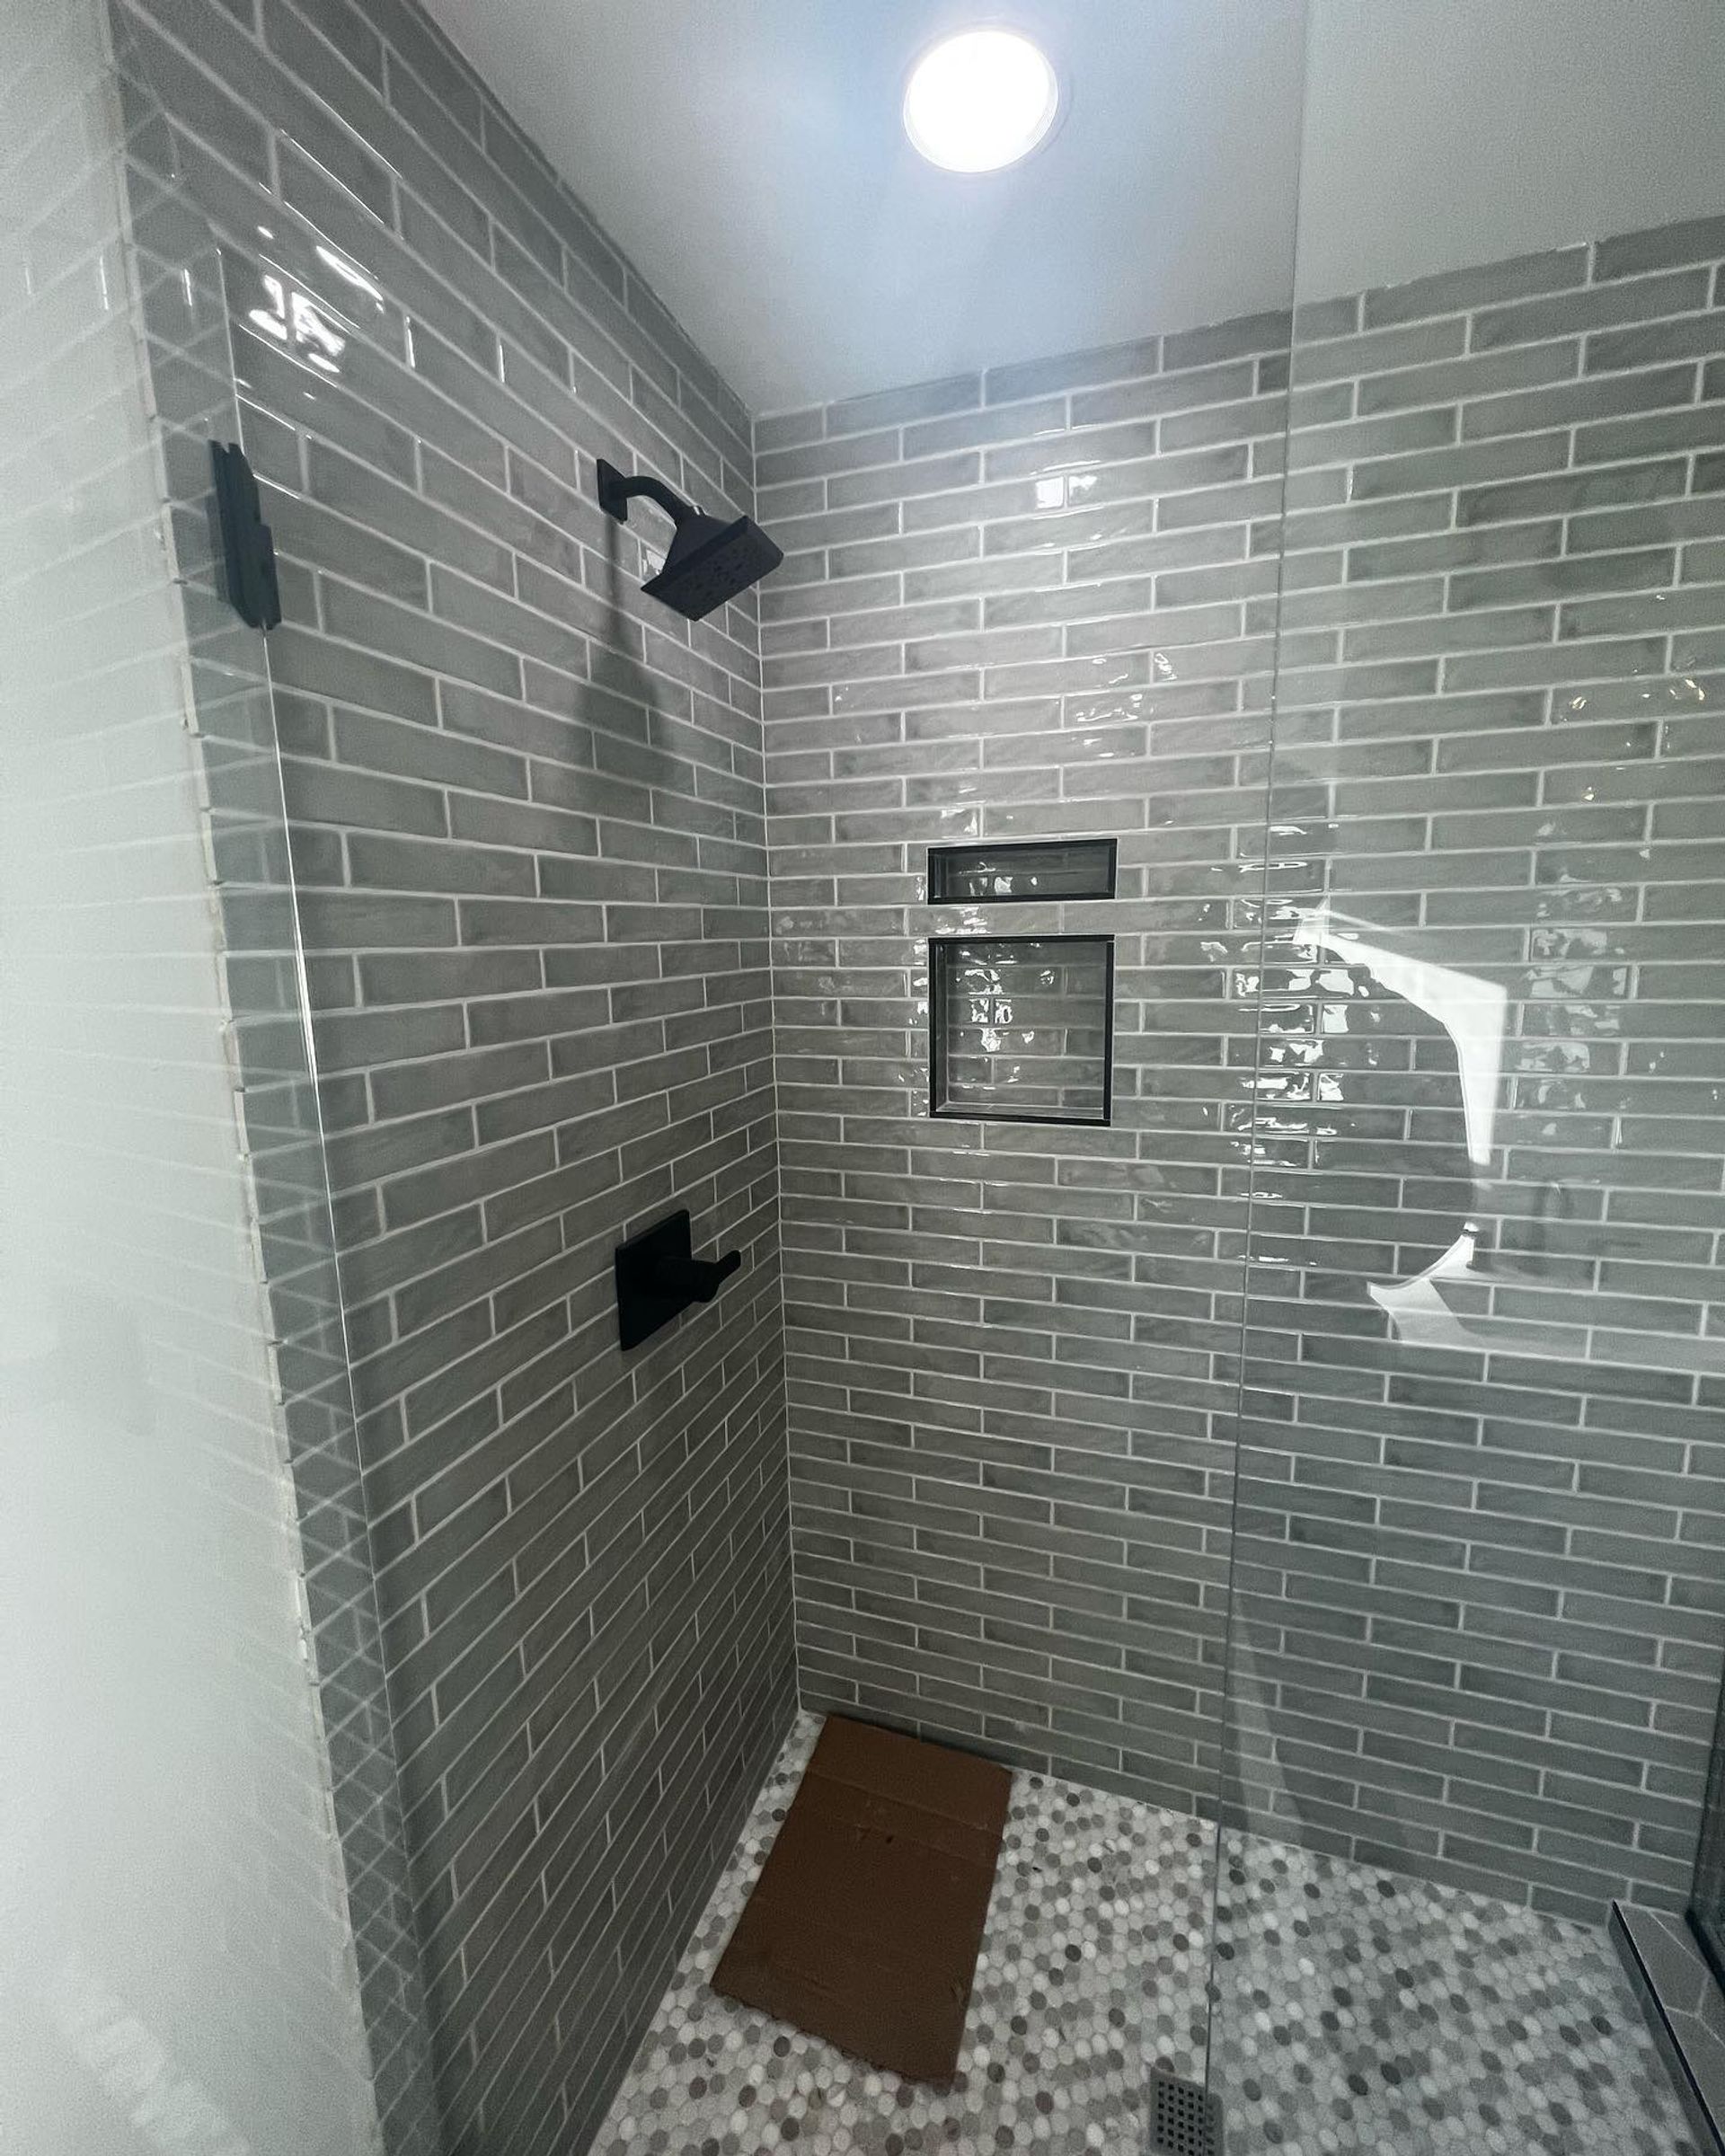 custom shower